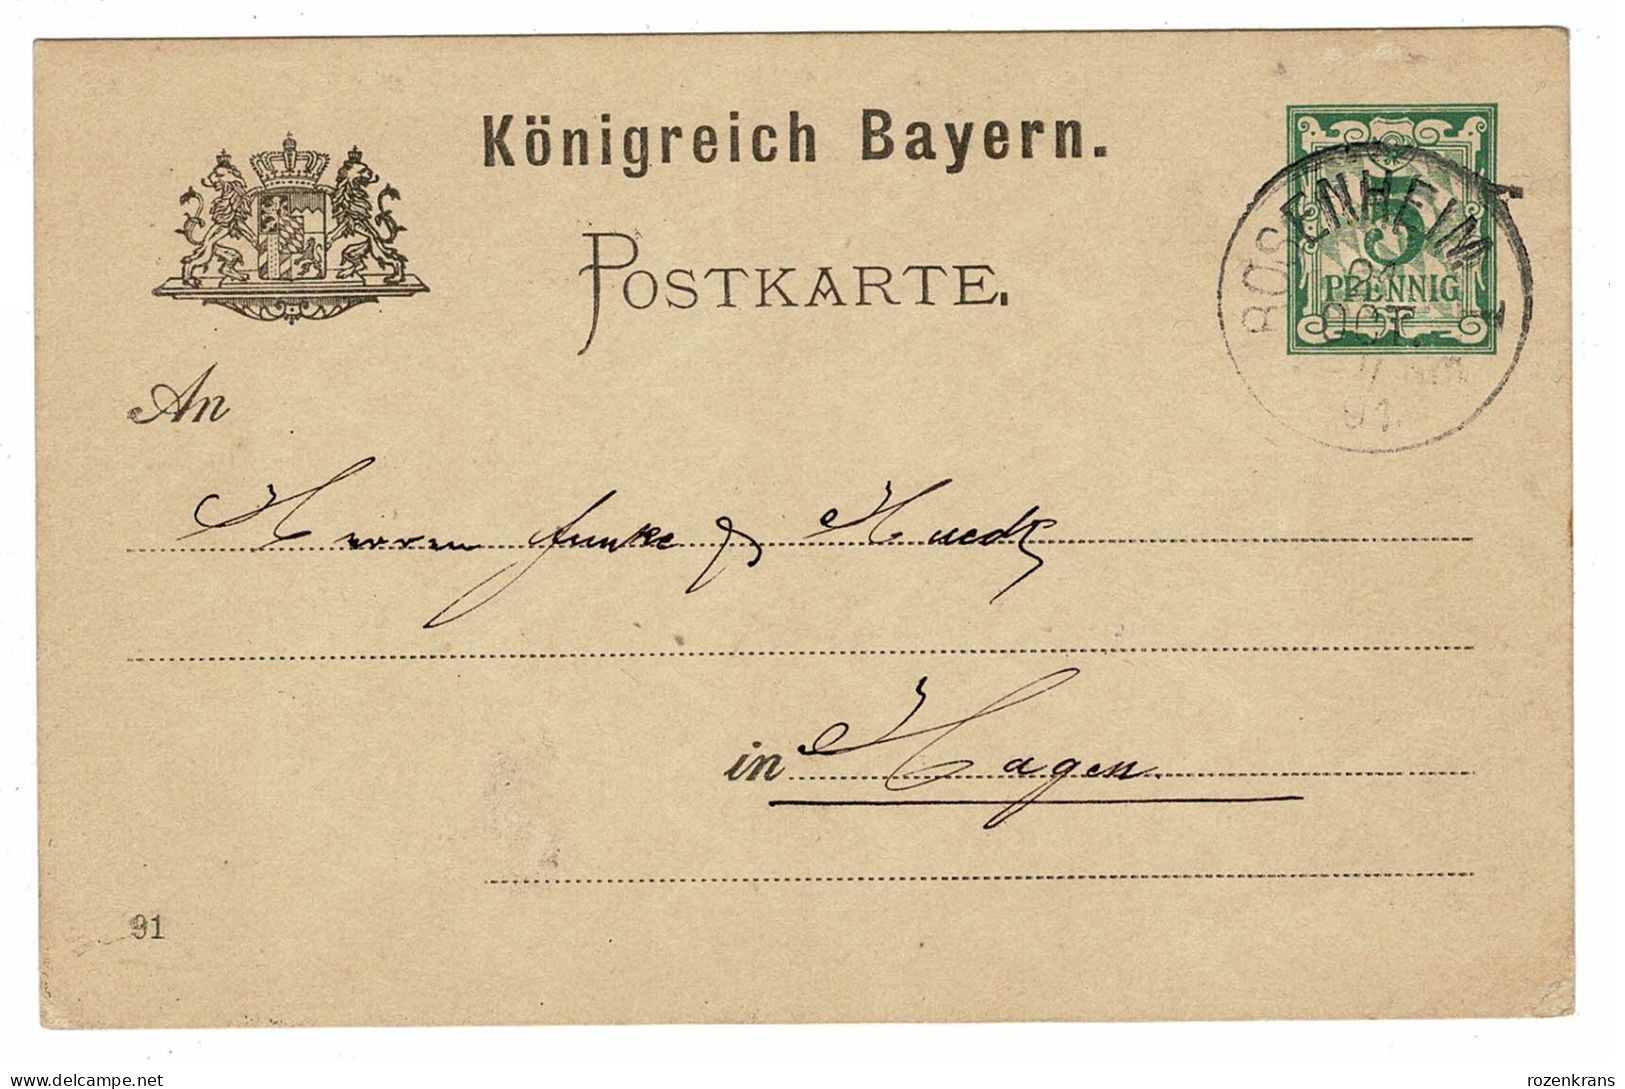 EP E.P. Entier Postale Ganzsache Deutschland Konigreich Bayern Rosenheim 1891  Postkarte Stuttgart 5 Pfennig Allemagne - Postal  Stationery